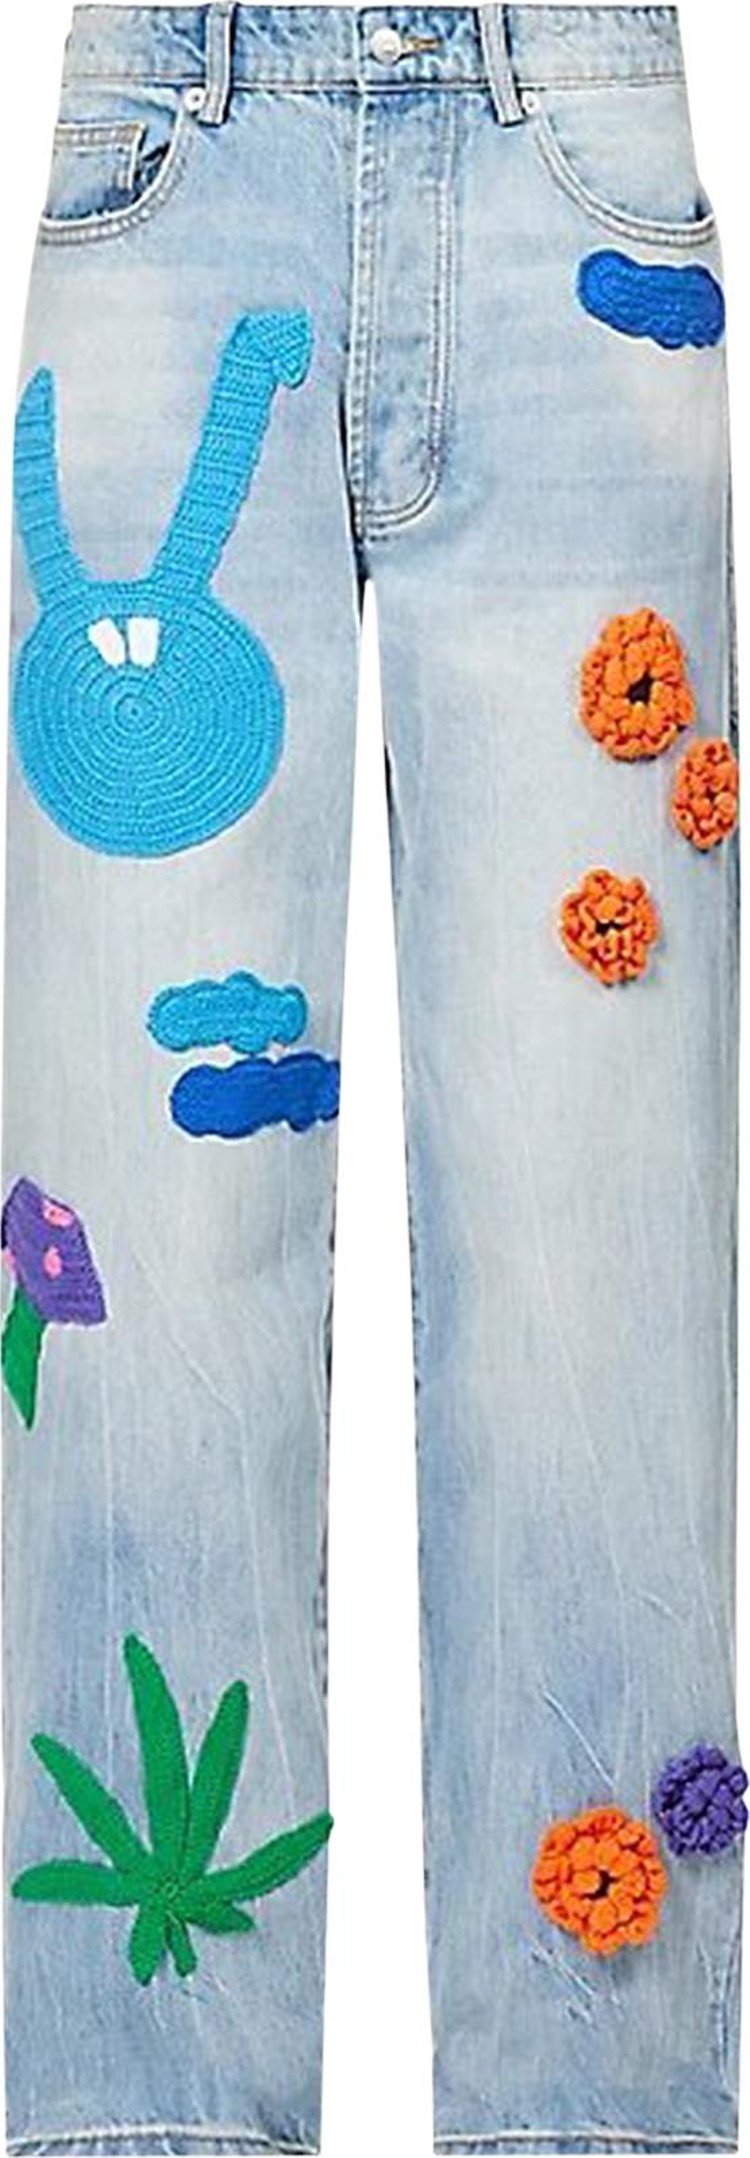 Nahmias Denim Knit Patchwork Jeans 'Light Wash'